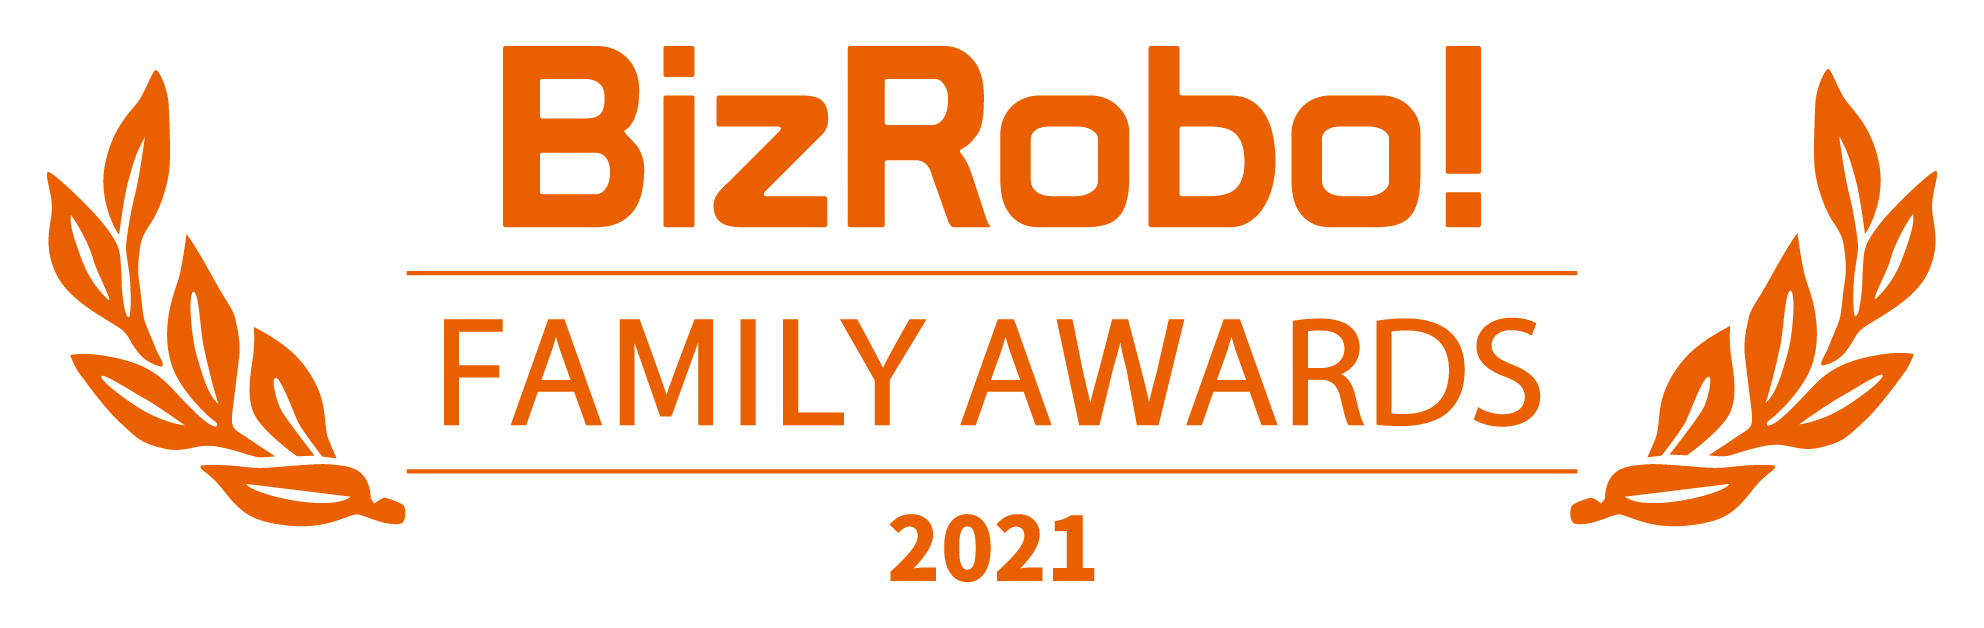 BizRobo! Family Awards 2021